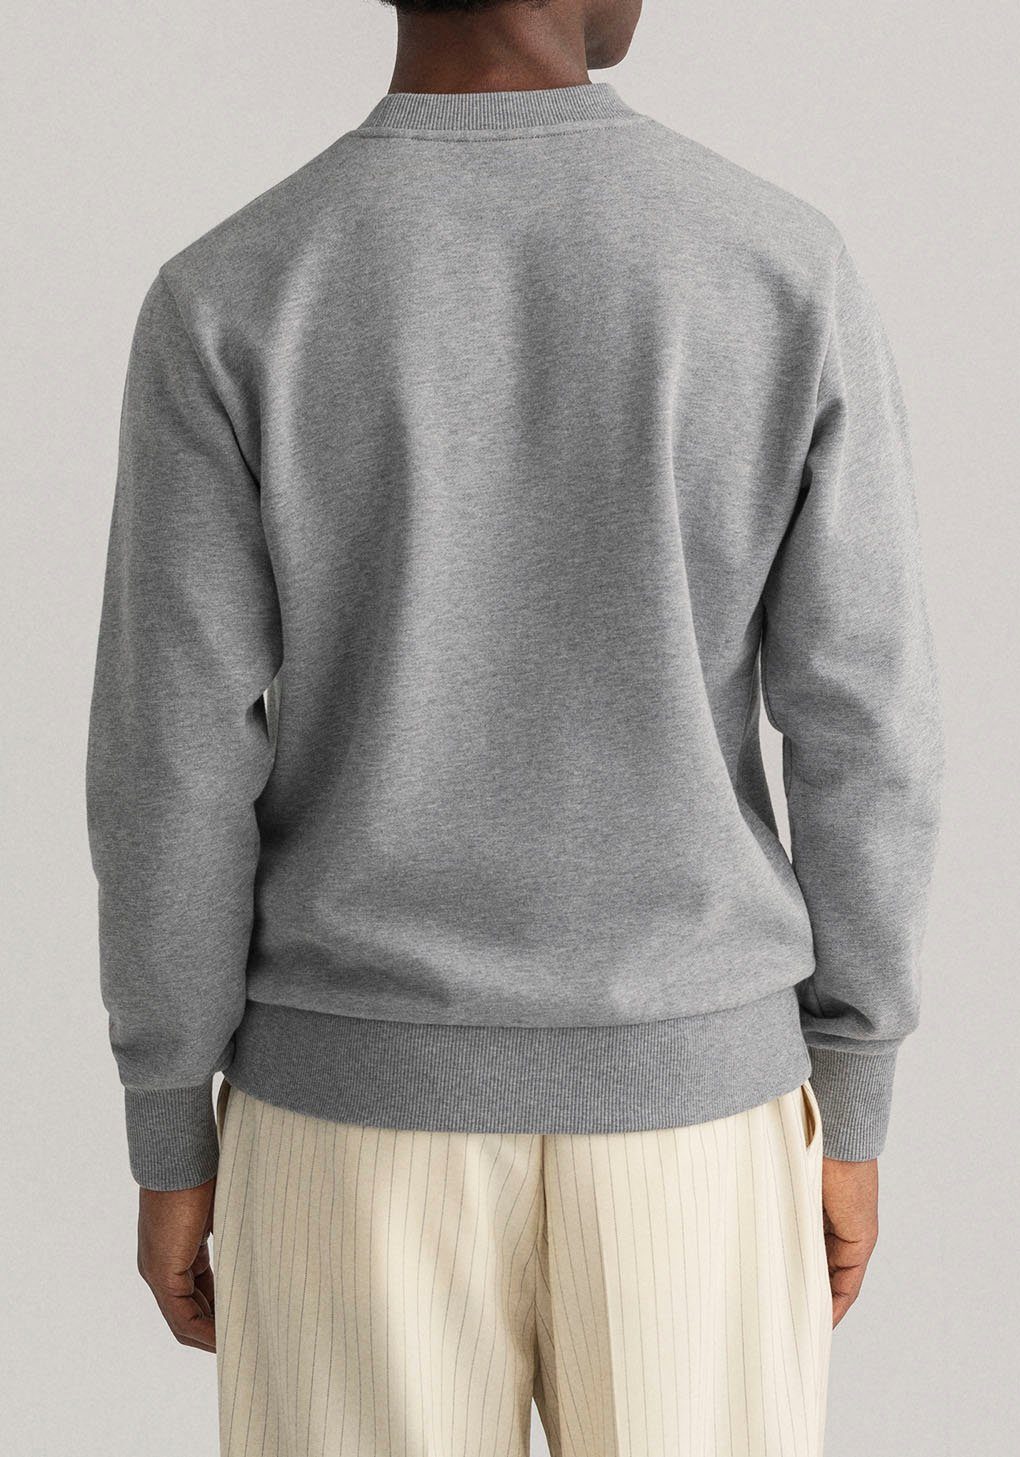 mit D1. Brust Gant melange grey der Logostickerei TONAL ARCHIVE C-NECK Sweatshirt auf SHIELD